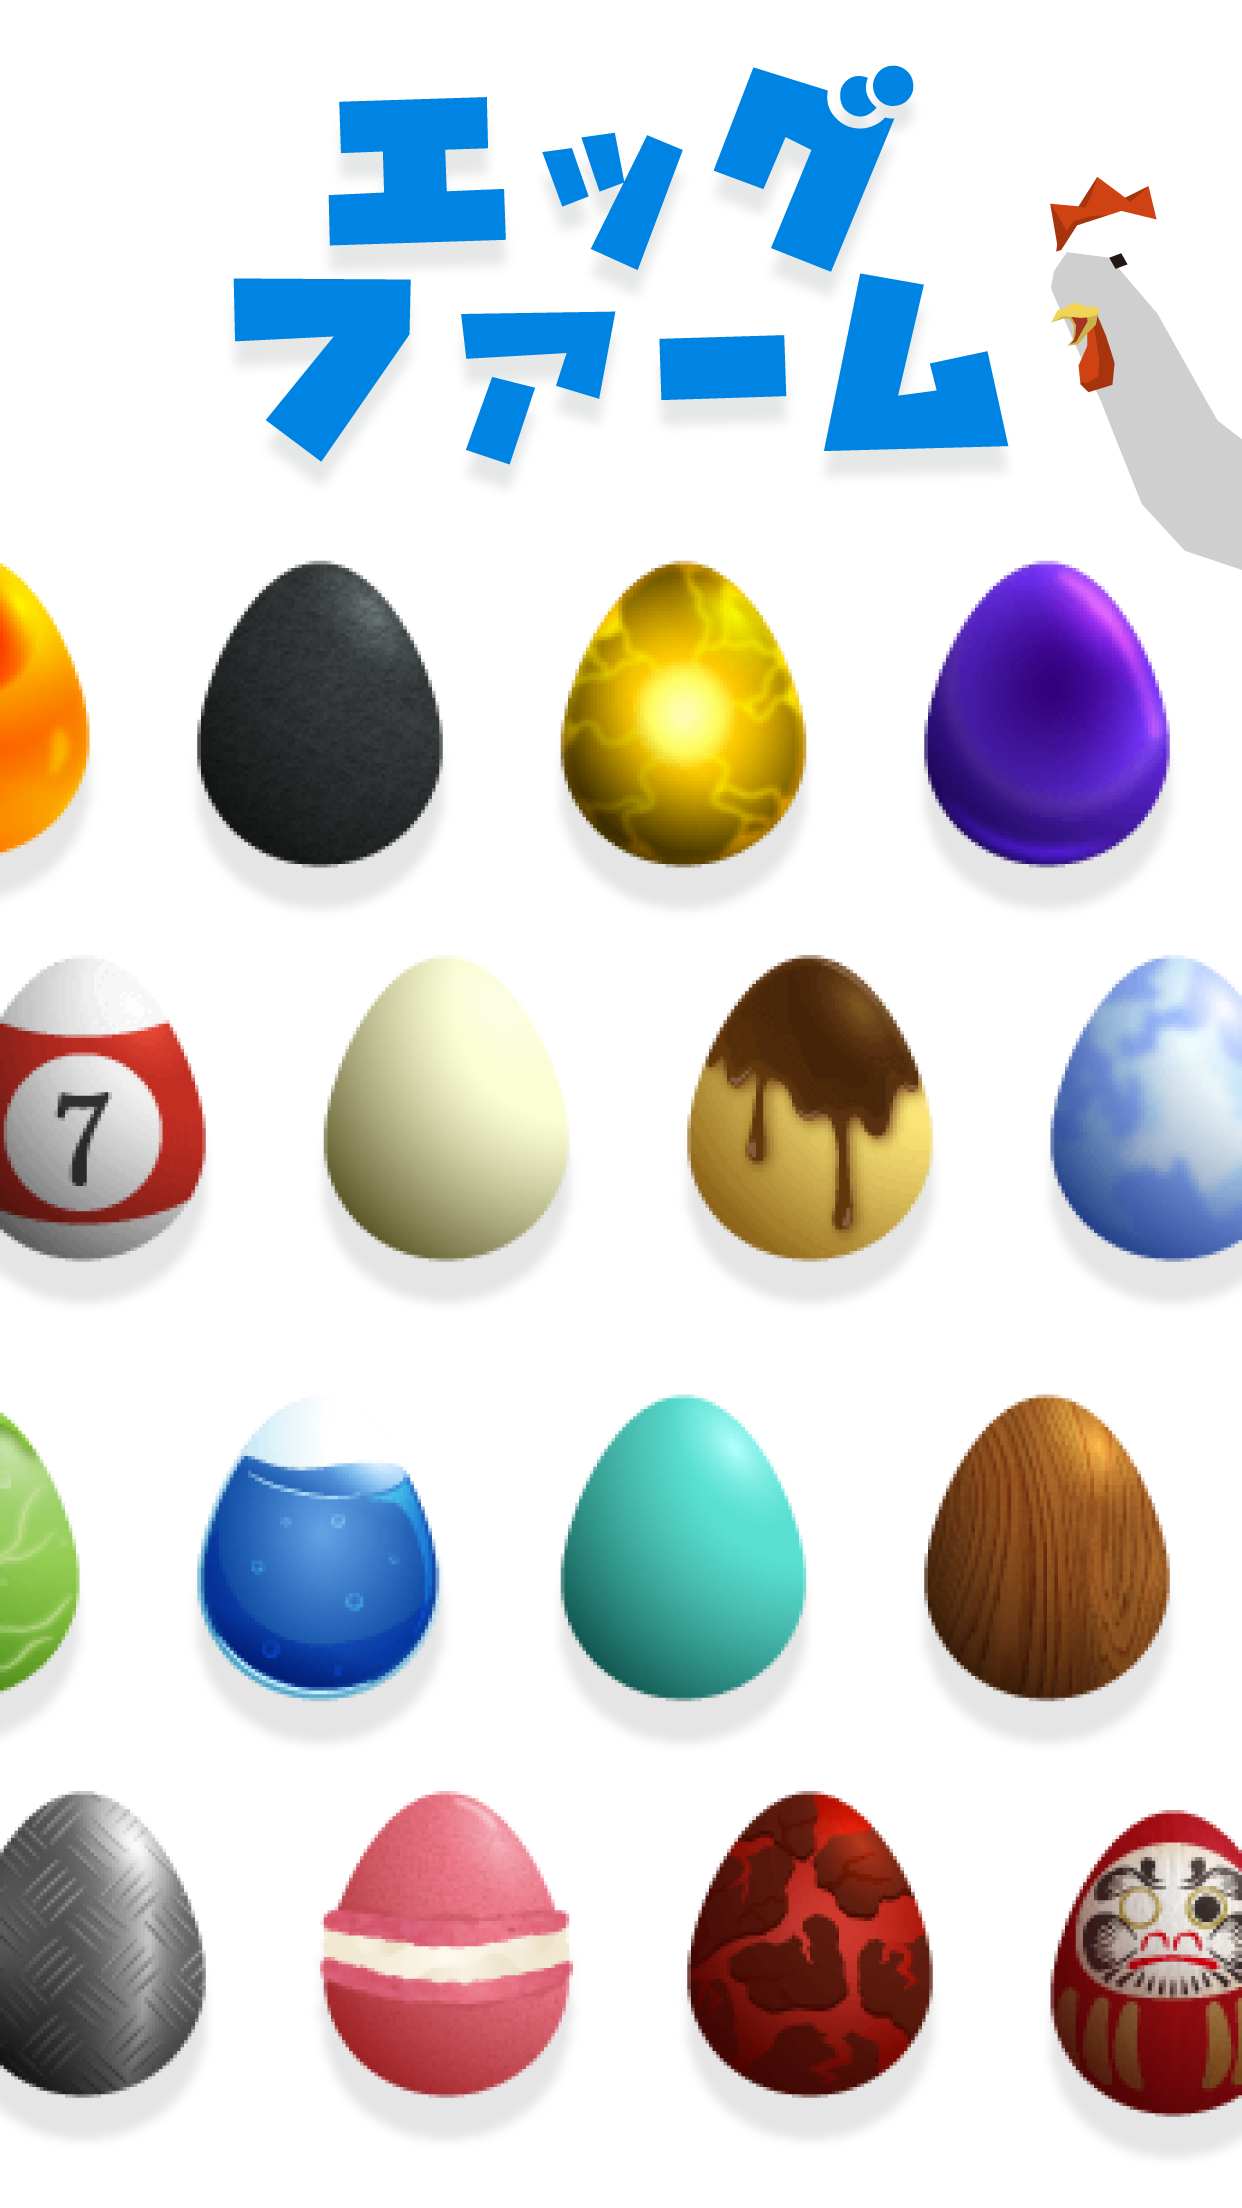 Screenshot 1 of Egg Farm - Permainan telur yang bisa menempel di mana saja 2.4.0